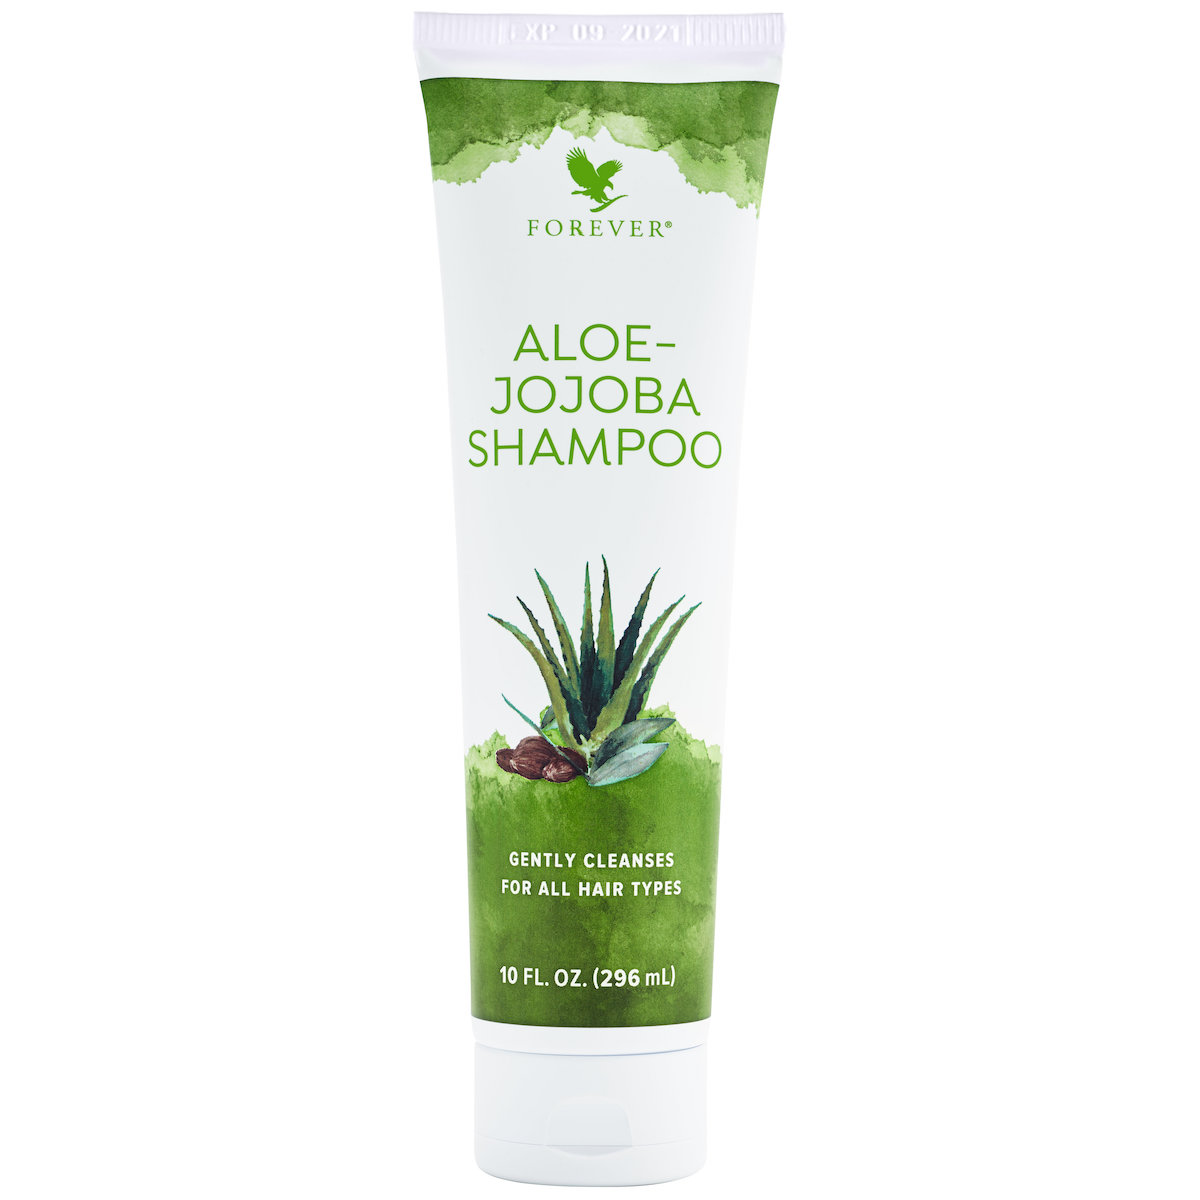 NEW Aloe-Jojoba Shampoo